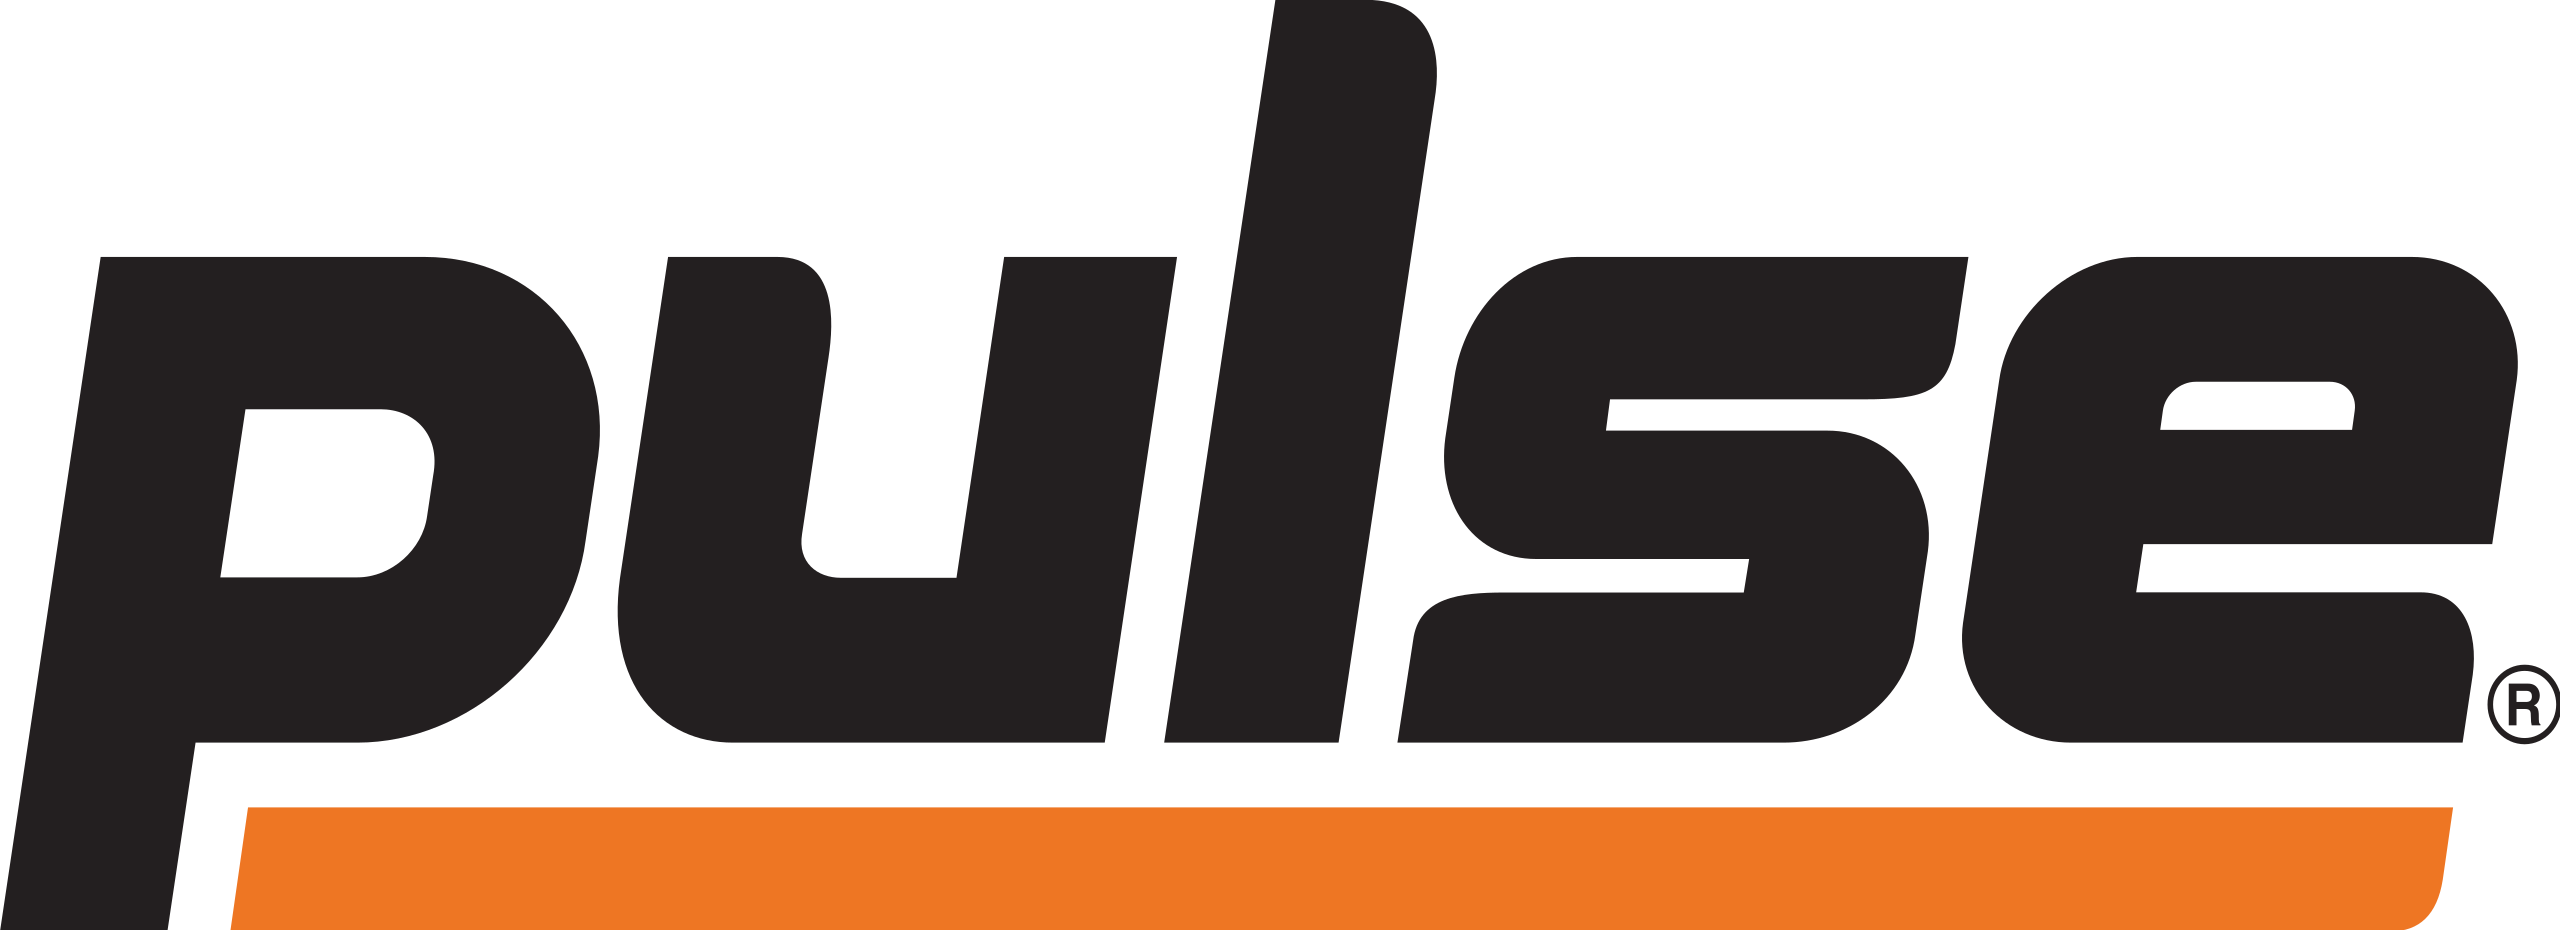 Logotipo de la empresa multinacional de procesamiento de pagos Pulse